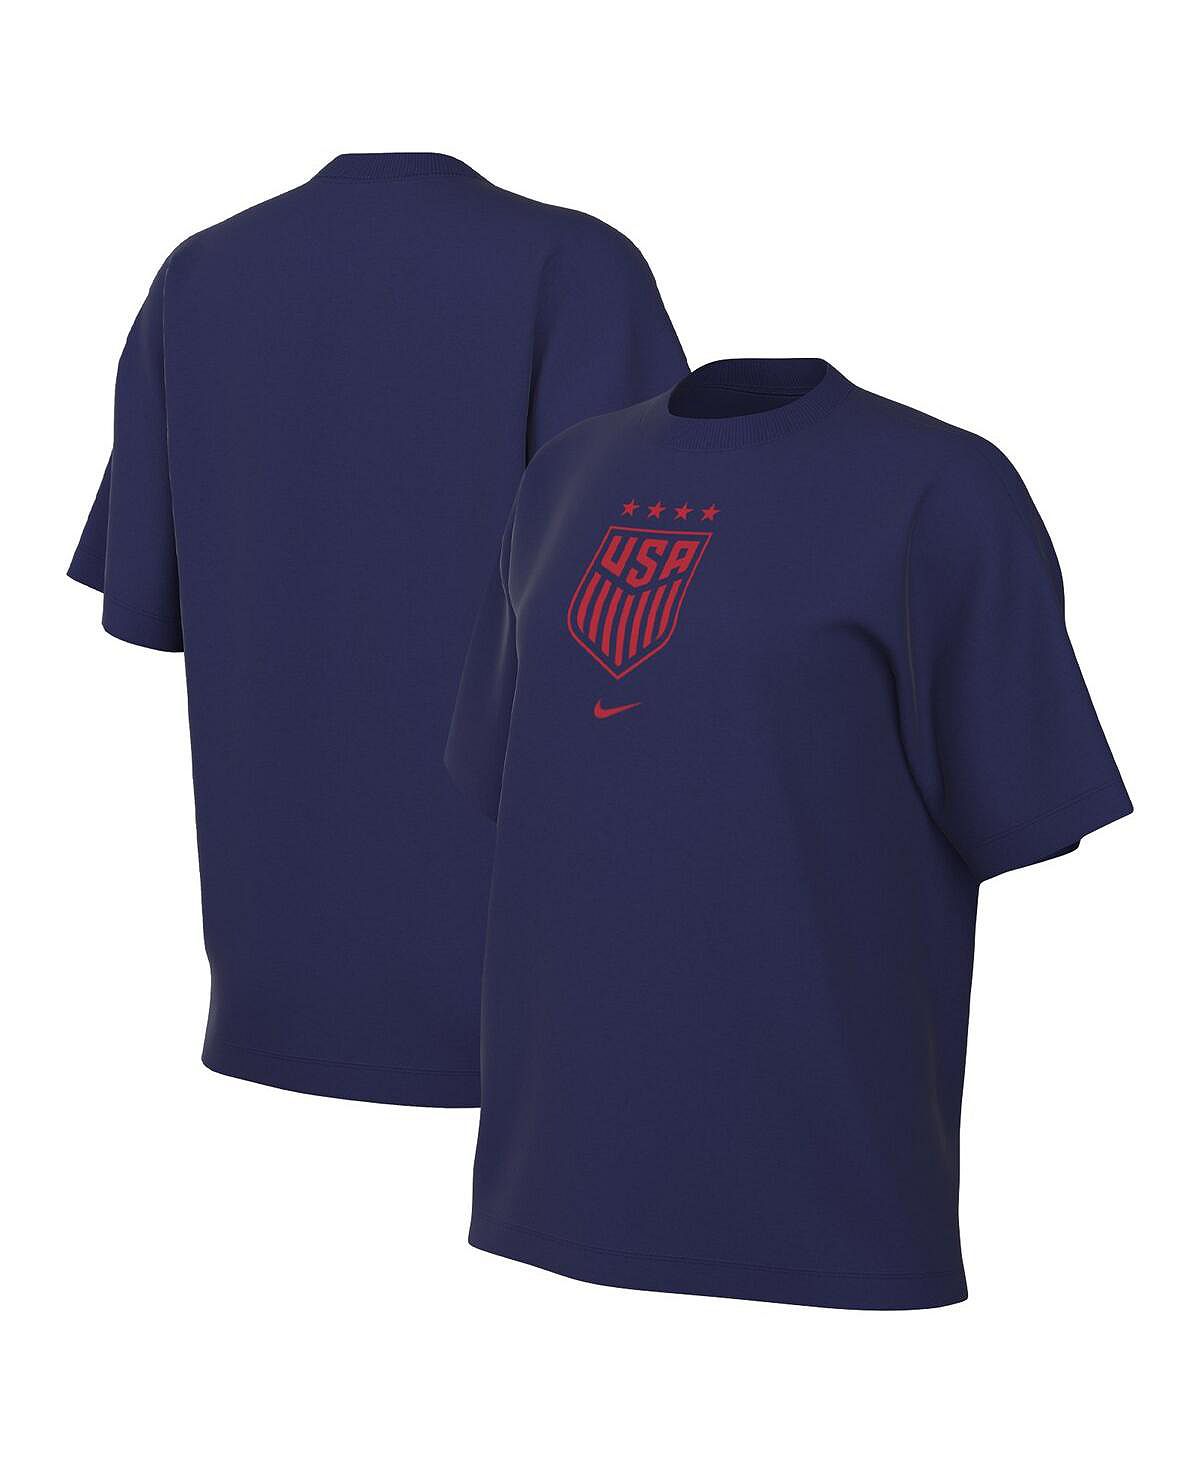 Женская темно-синяя футболка с гербом USWNT Nike, темно-синий